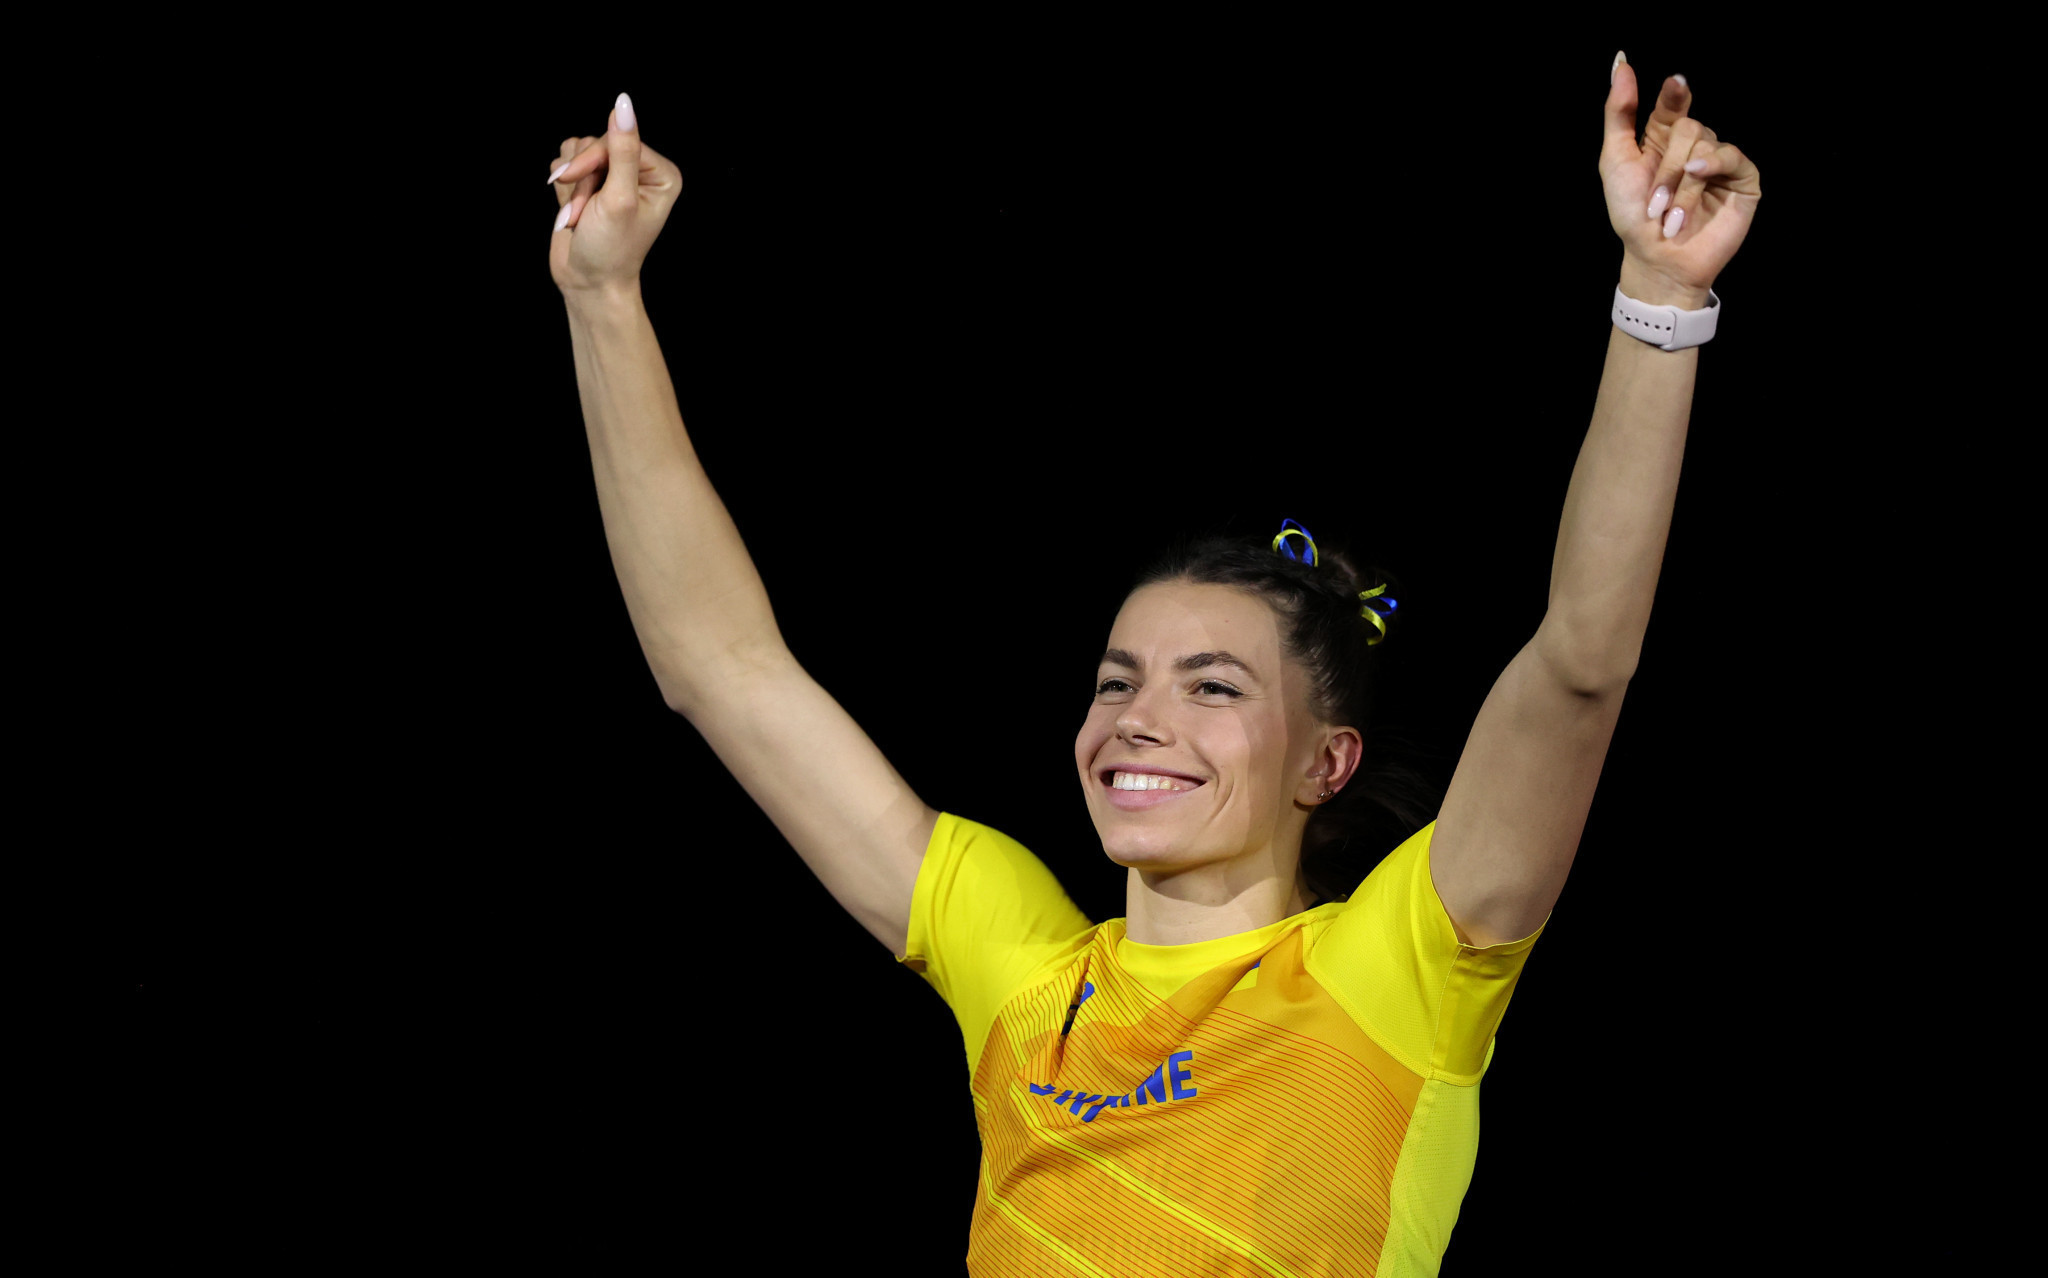 Ukrainian athletes set off for Oregon22 funded by World Athletics and IOC initiatives